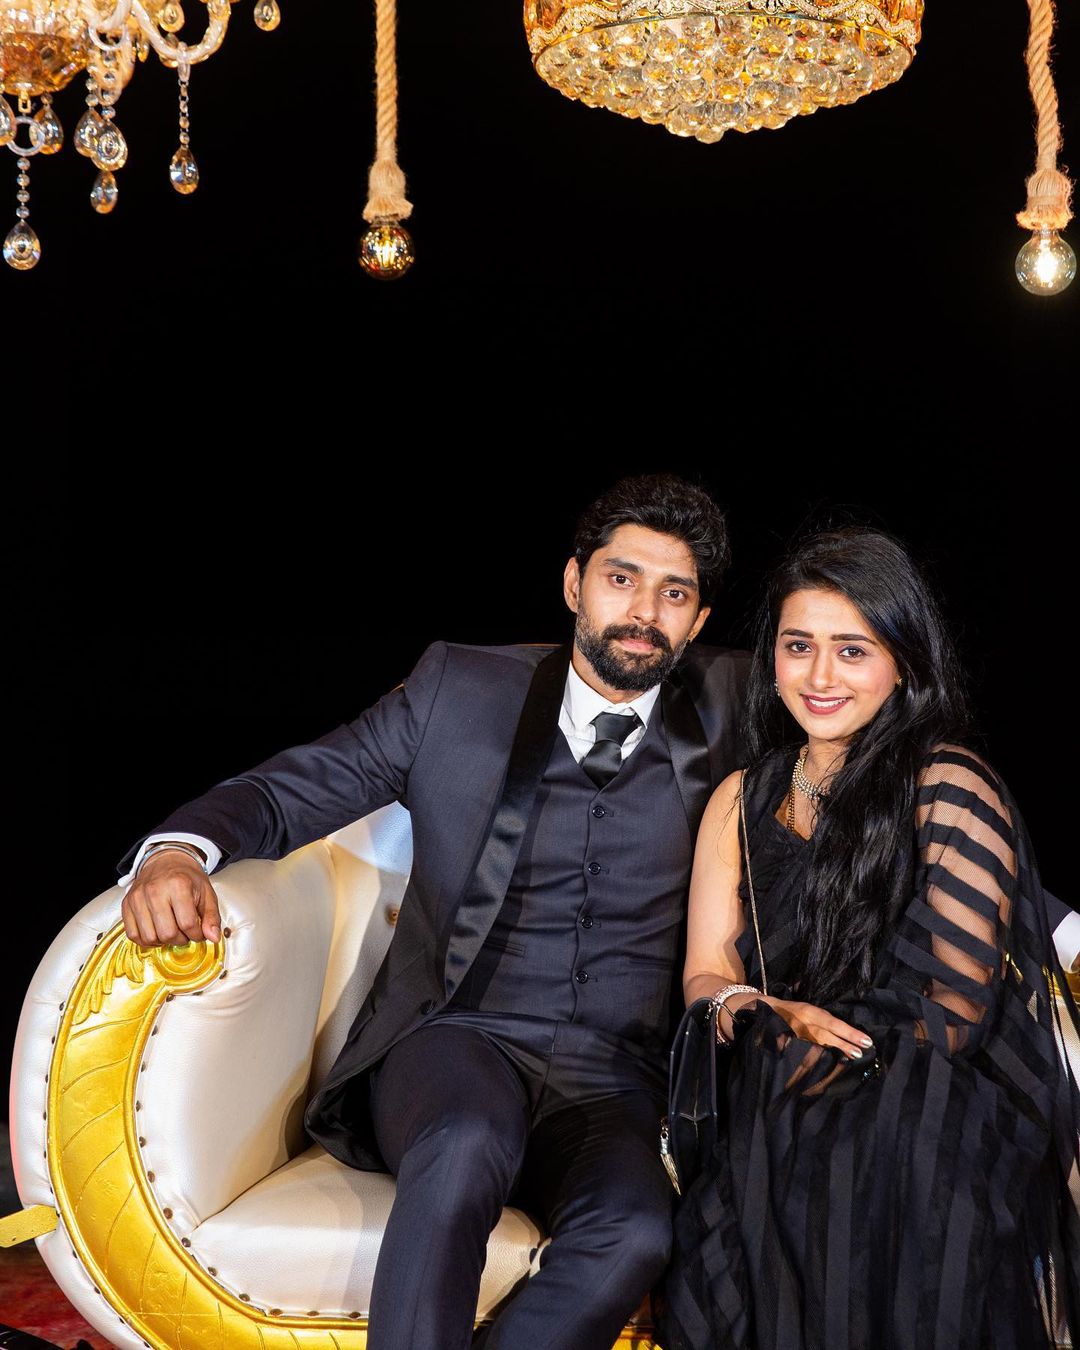 Radhika Muthukumar and Abhishek Iyer in black dress